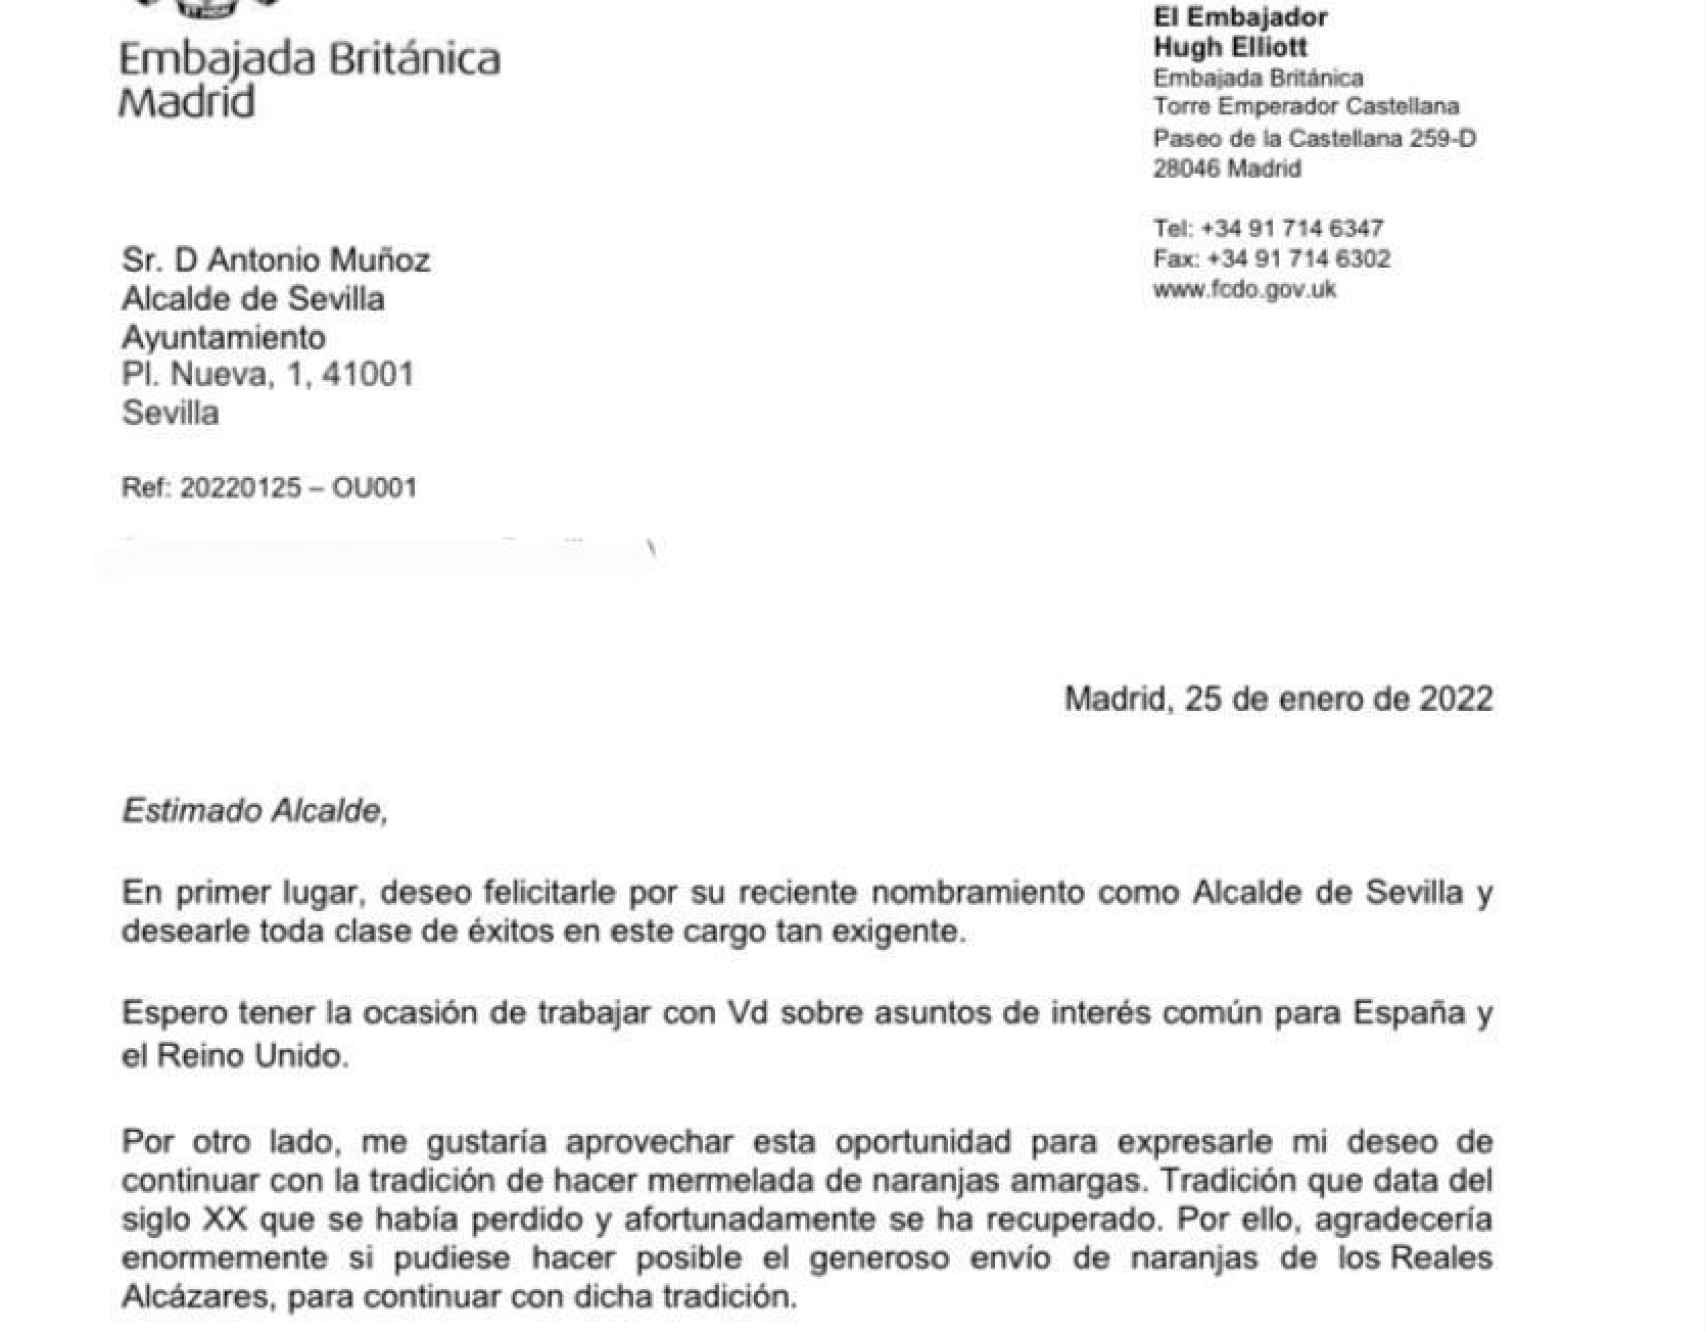 La misiva enviada hace unas semanas por el embajador británico al alcalde de Sevilla.